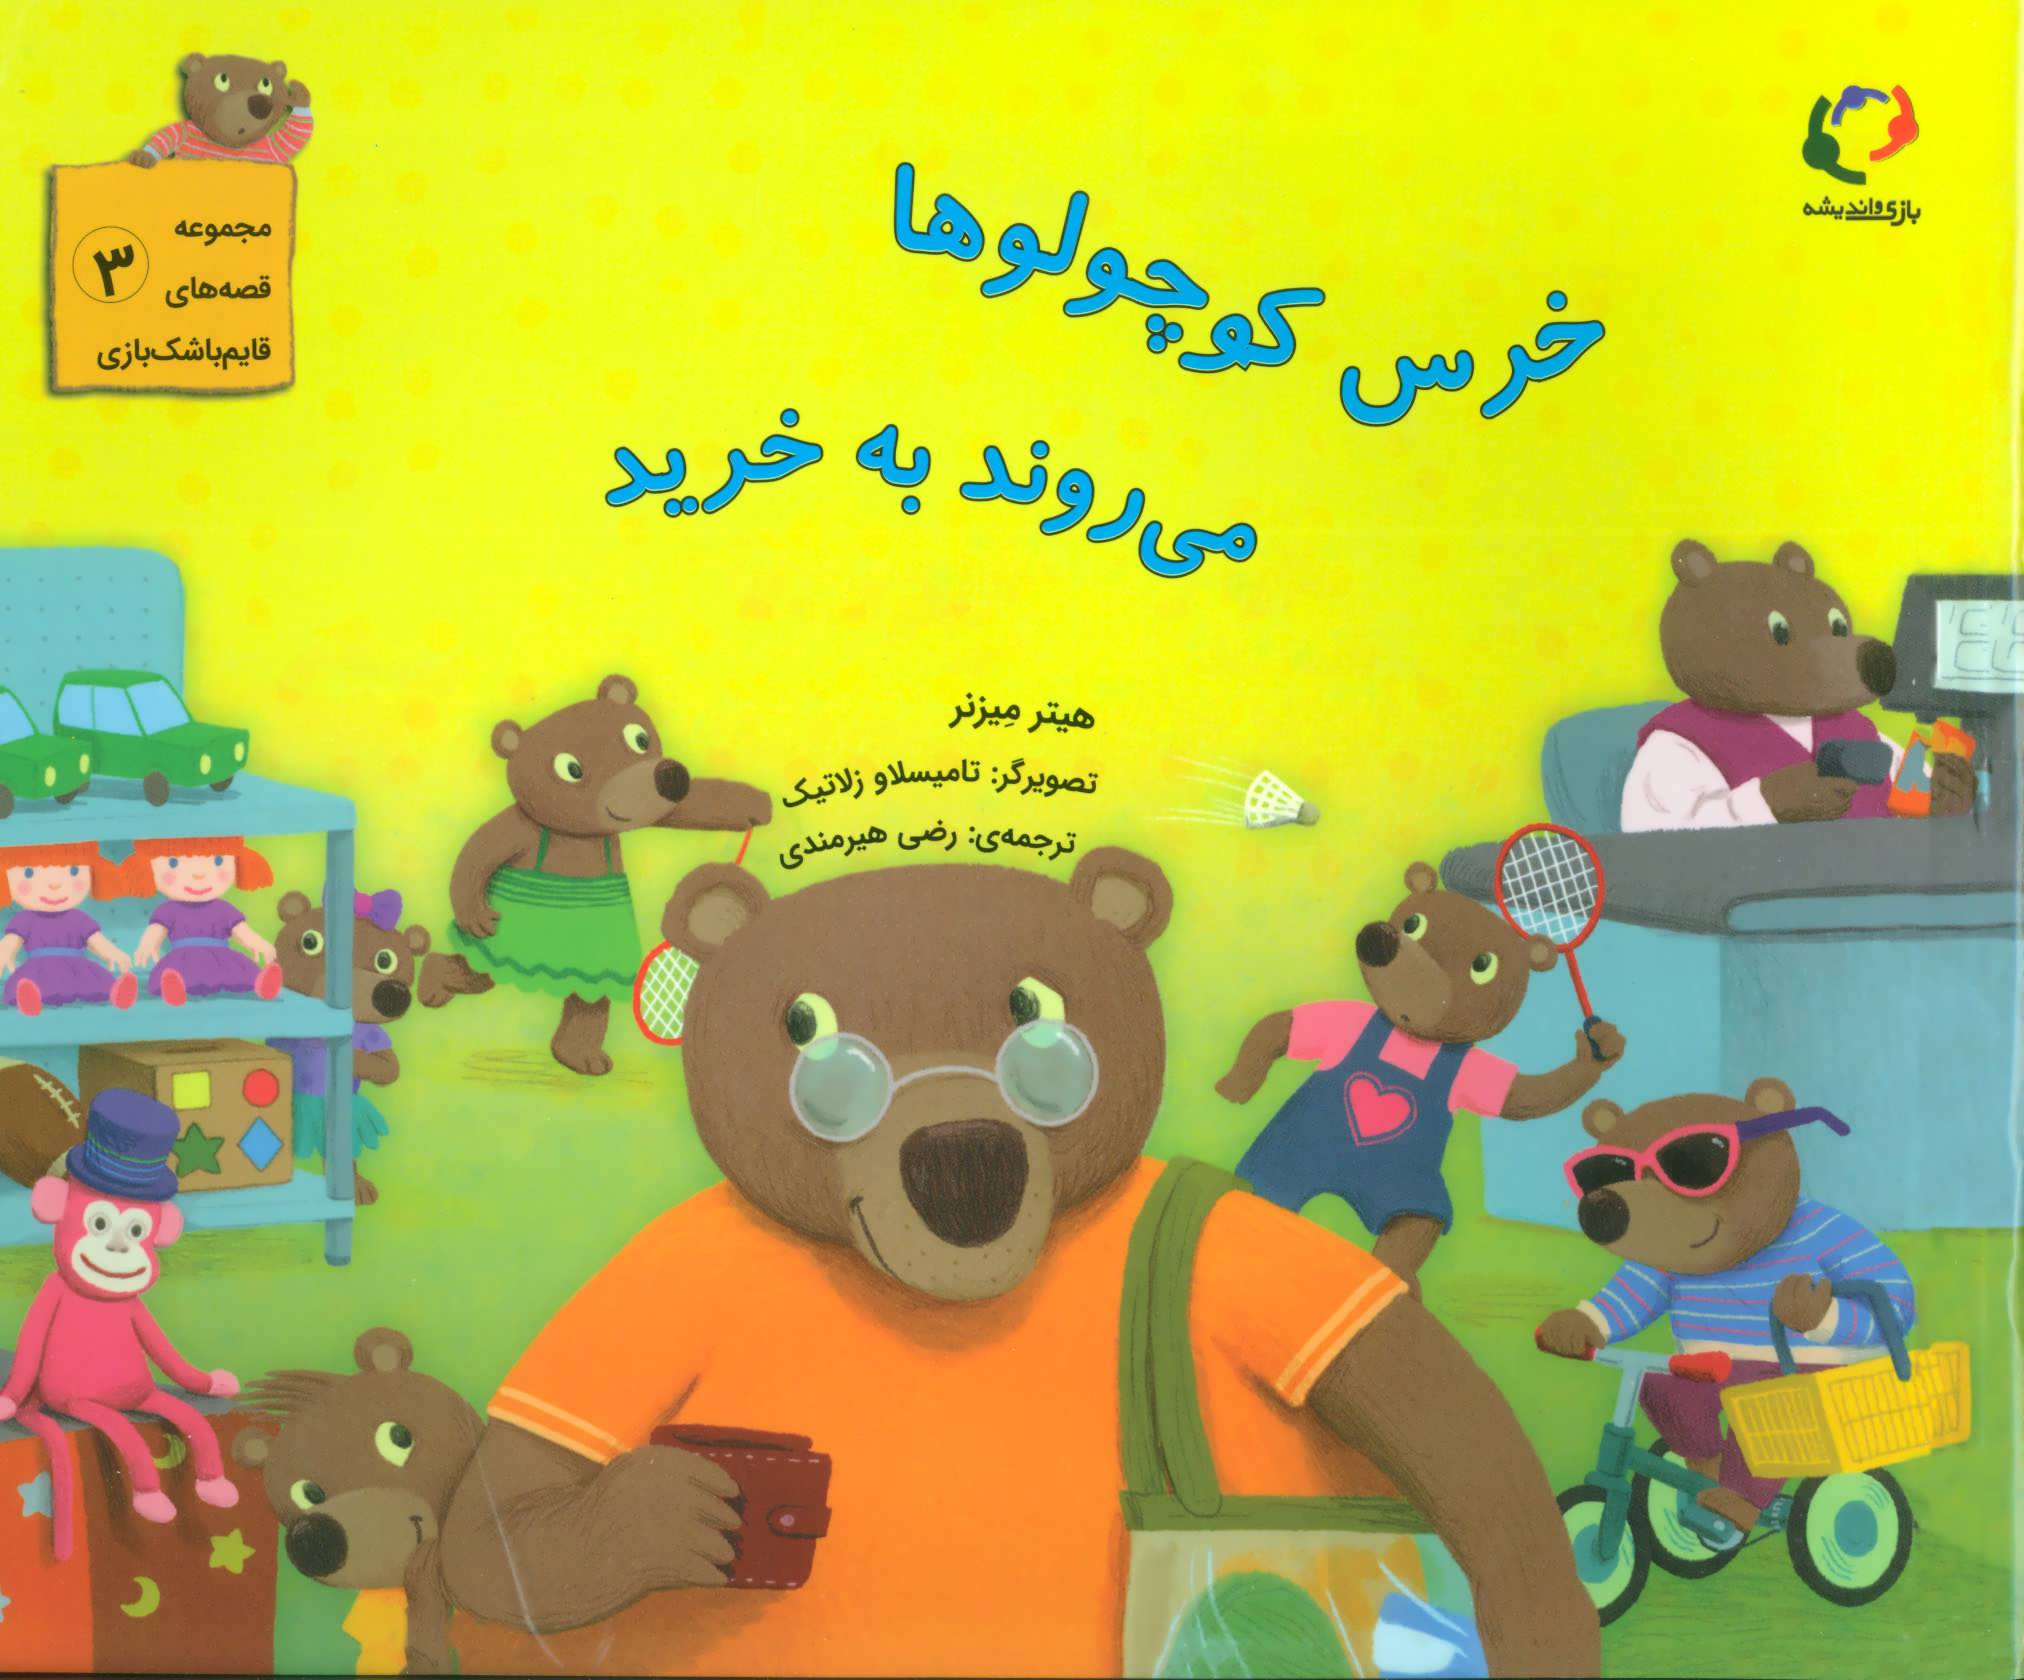  کتاب خرس کوچولوها می روند به خرید